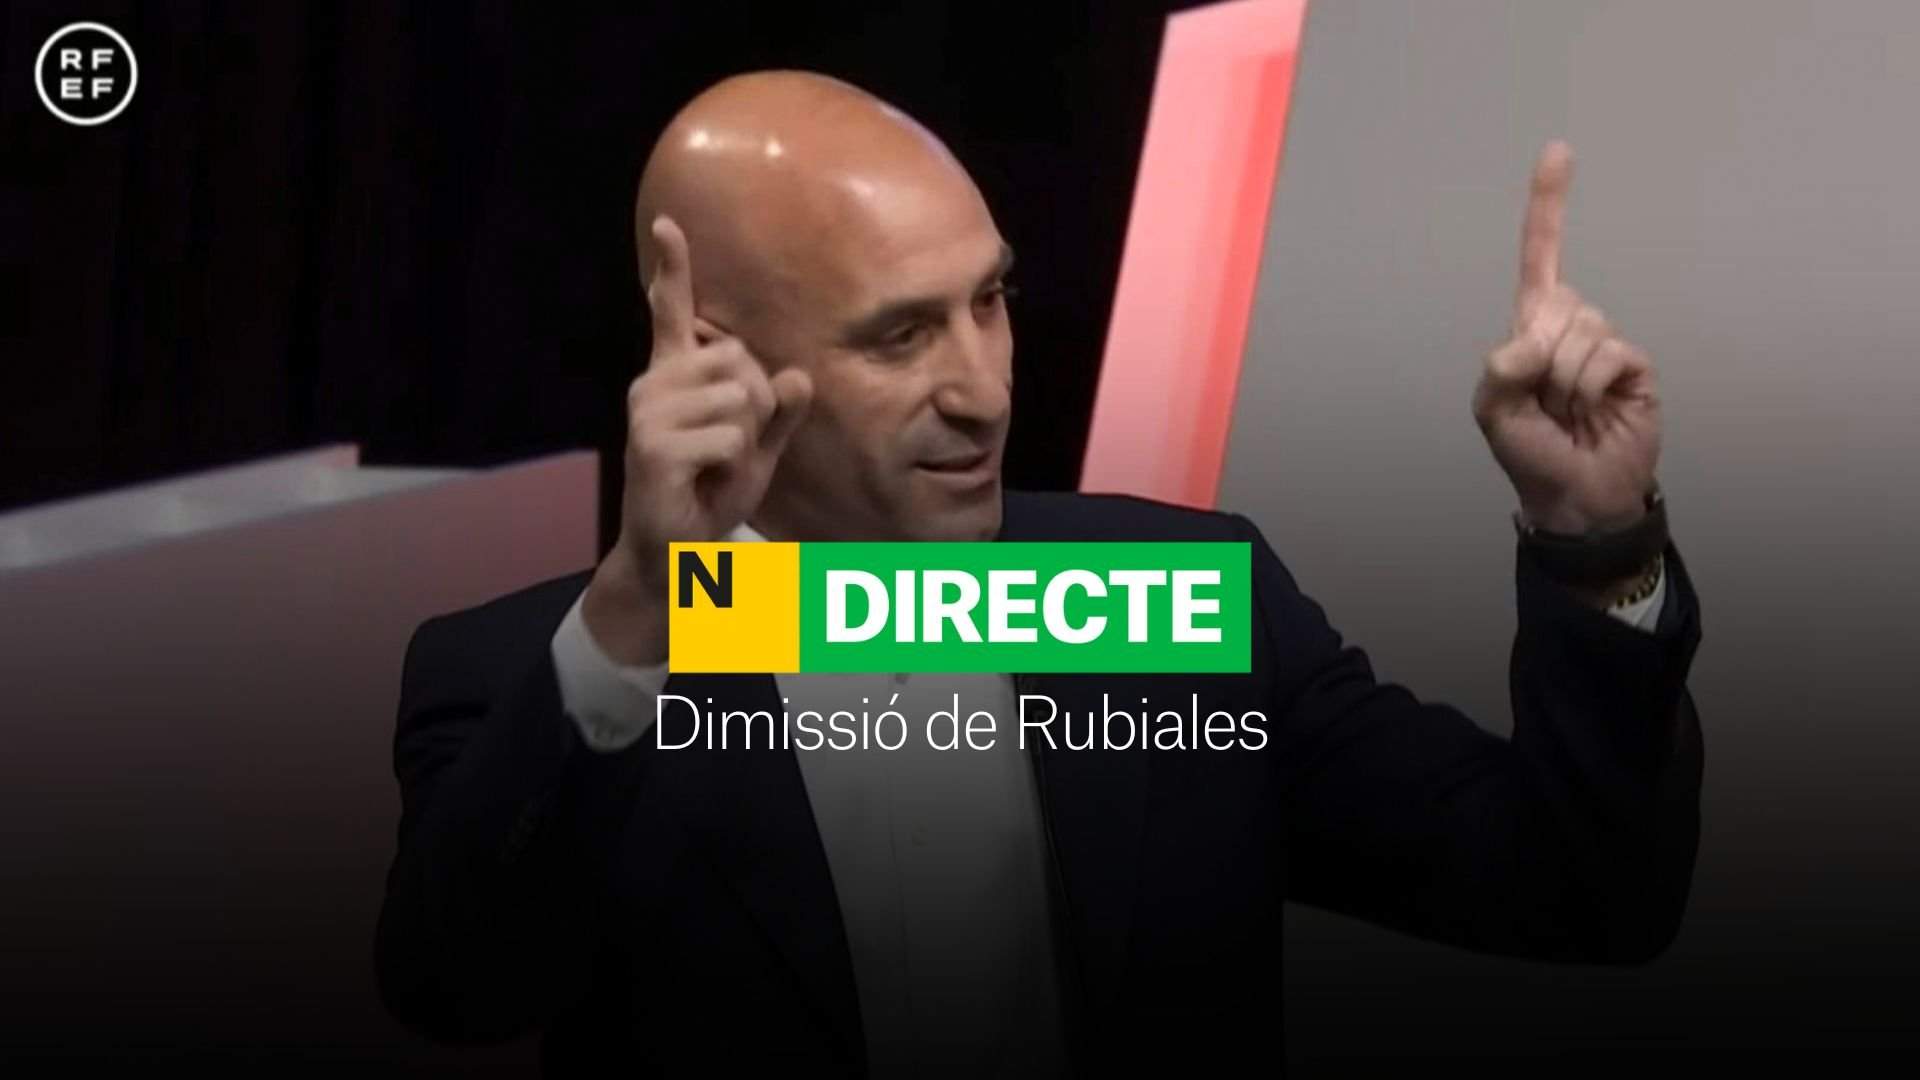 Luis Rubiales no dimite, DIRECTO | Reacciones de los jugadores y jugadoras